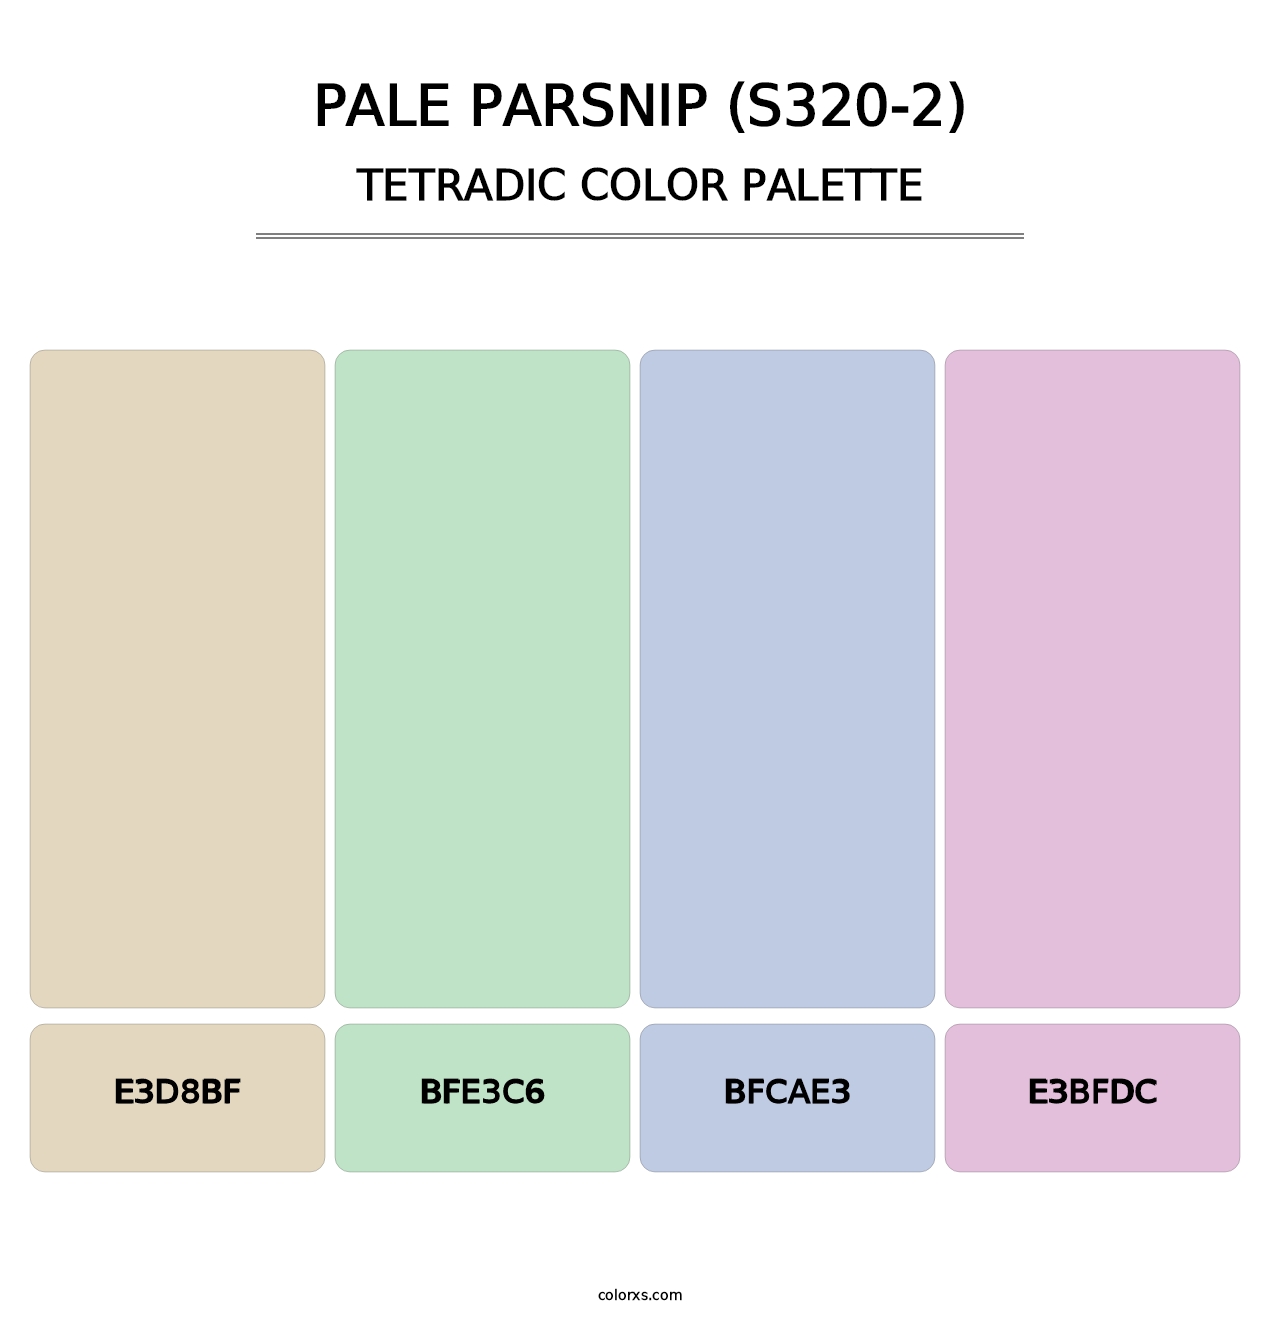 Pale Parsnip (S320-2) - Tetradic Color Palette